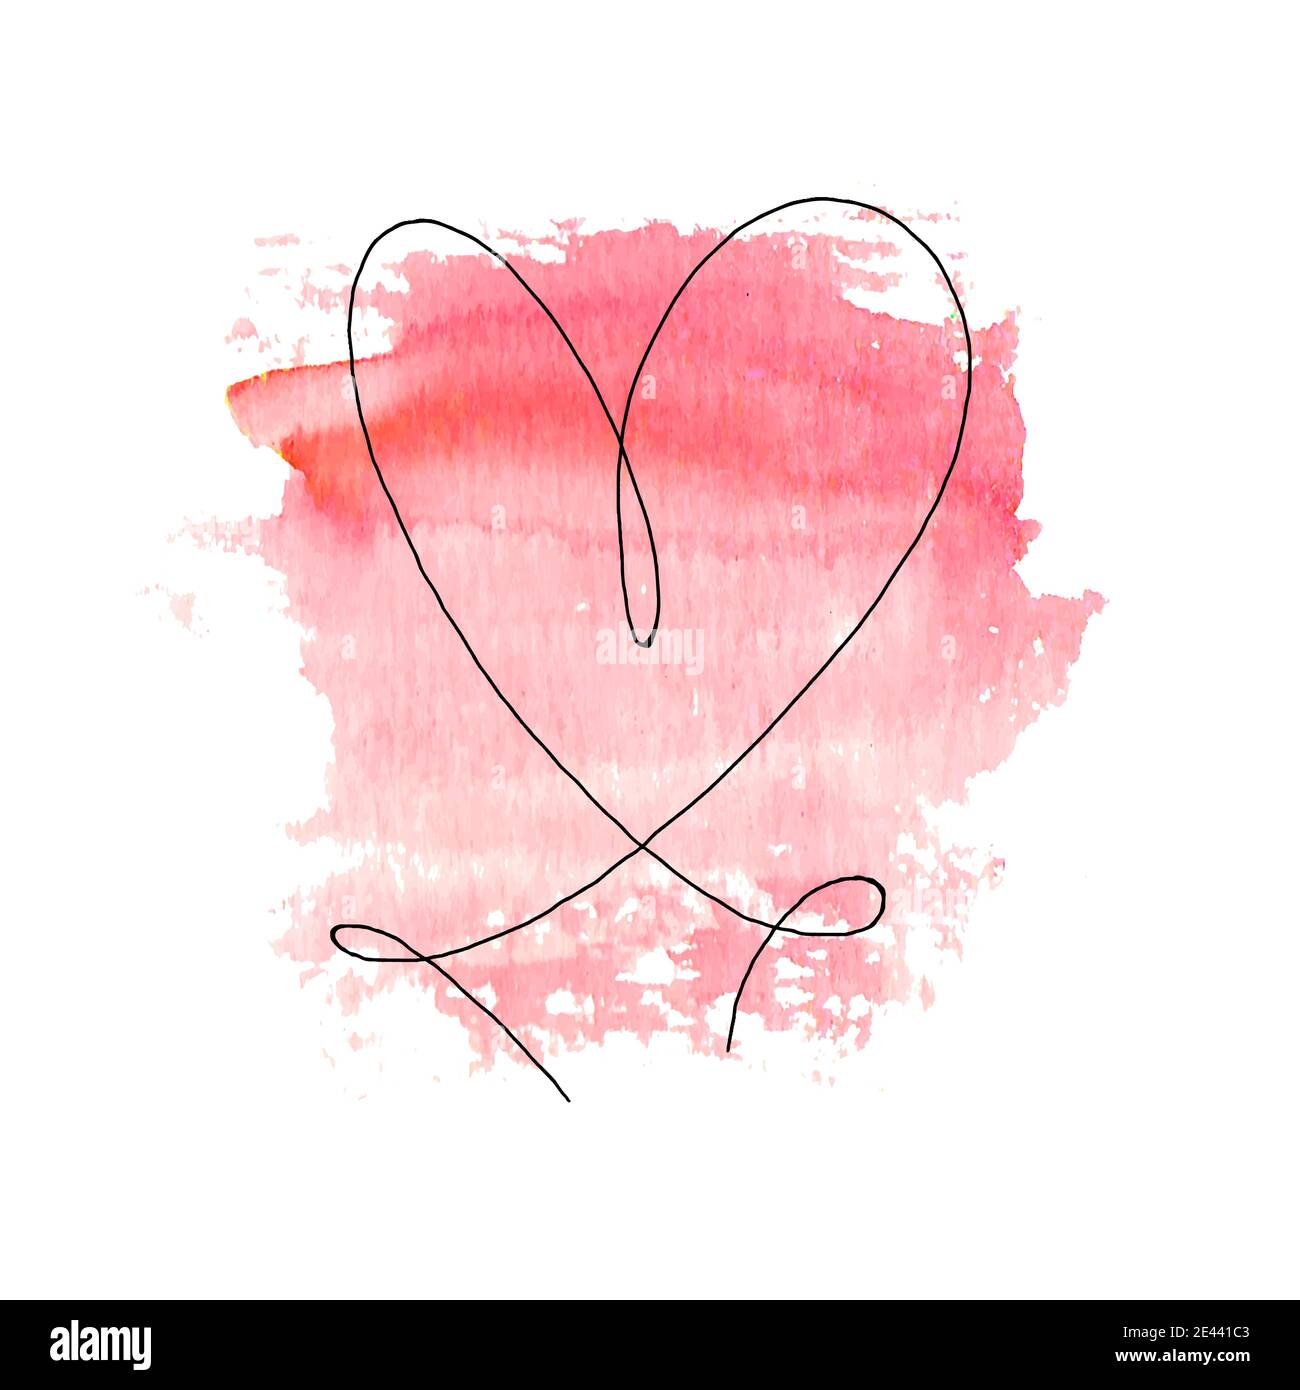 Corazón dibujado a mano con contorno negro y mancha roja de acuarela aislada sobre fondo blanco. Línea continua en forma de corazón. Un dibujo de línea. Templat Ilustración del Vector